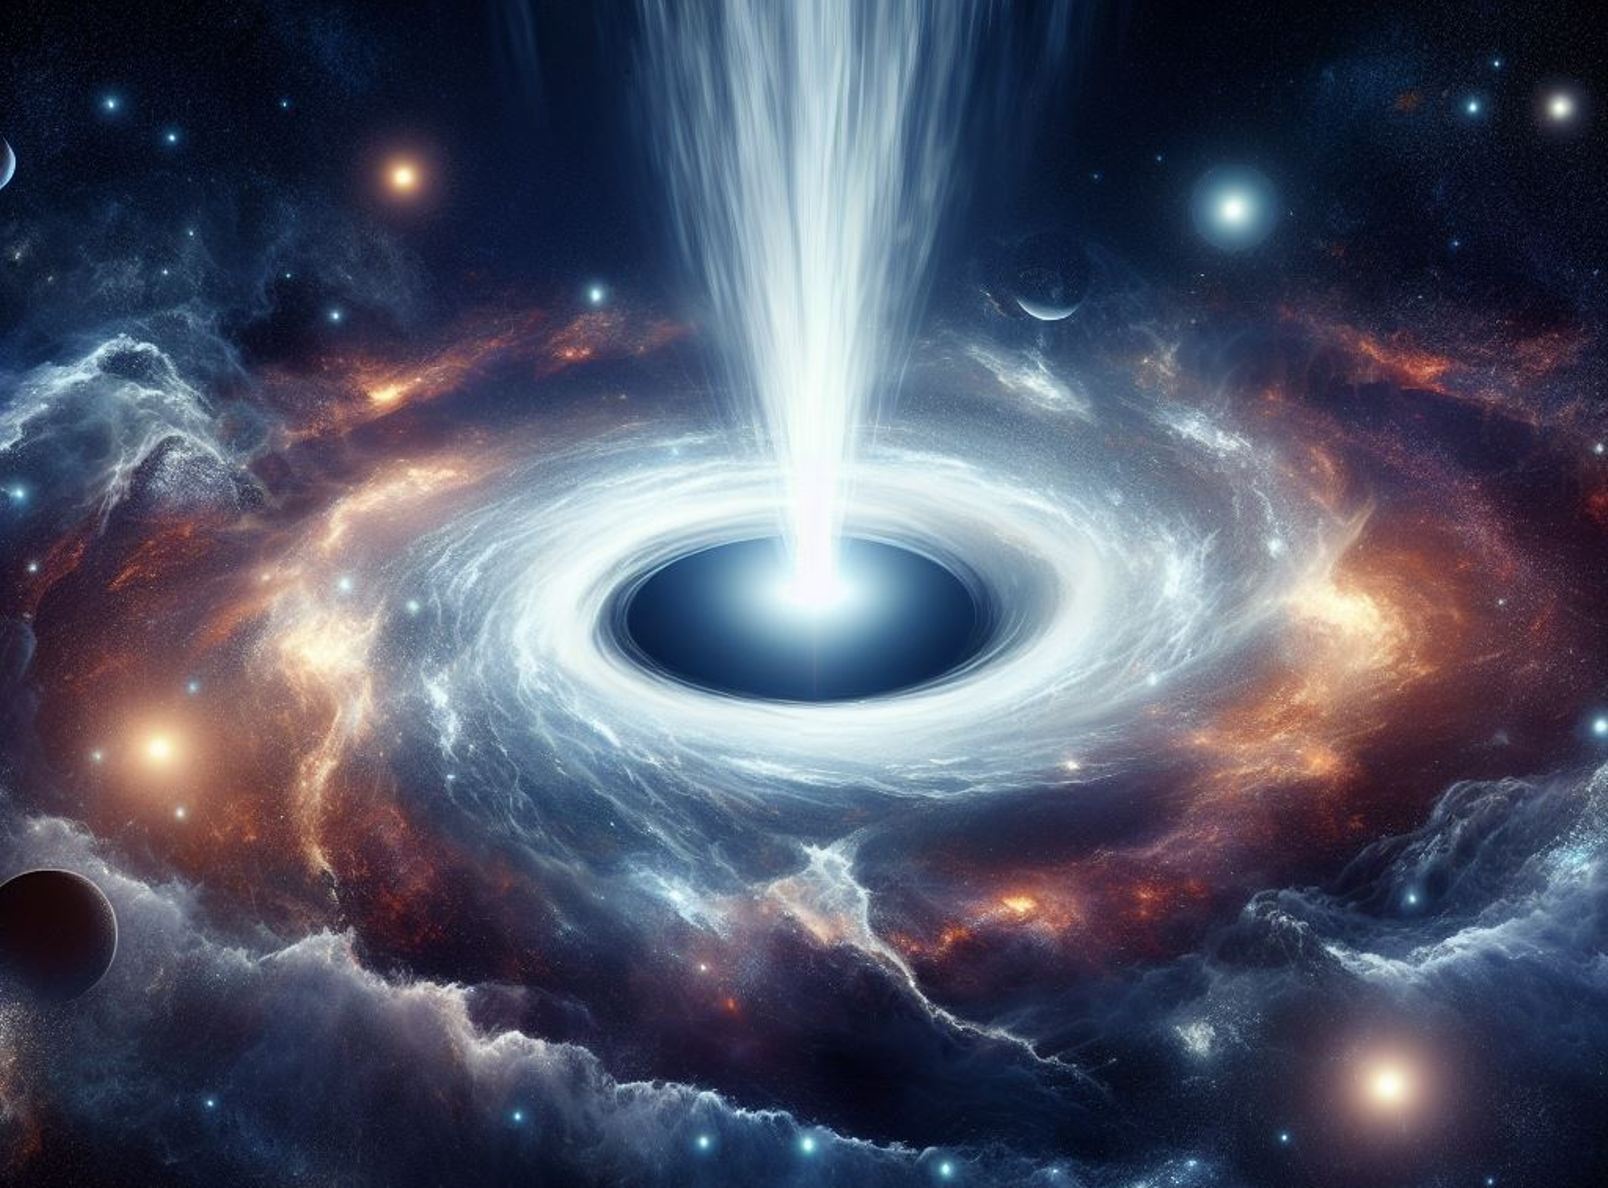 La fontaine cosmique d'un trou noir vue par l'IA DALL-E. © 2023 Microsoft Corporation